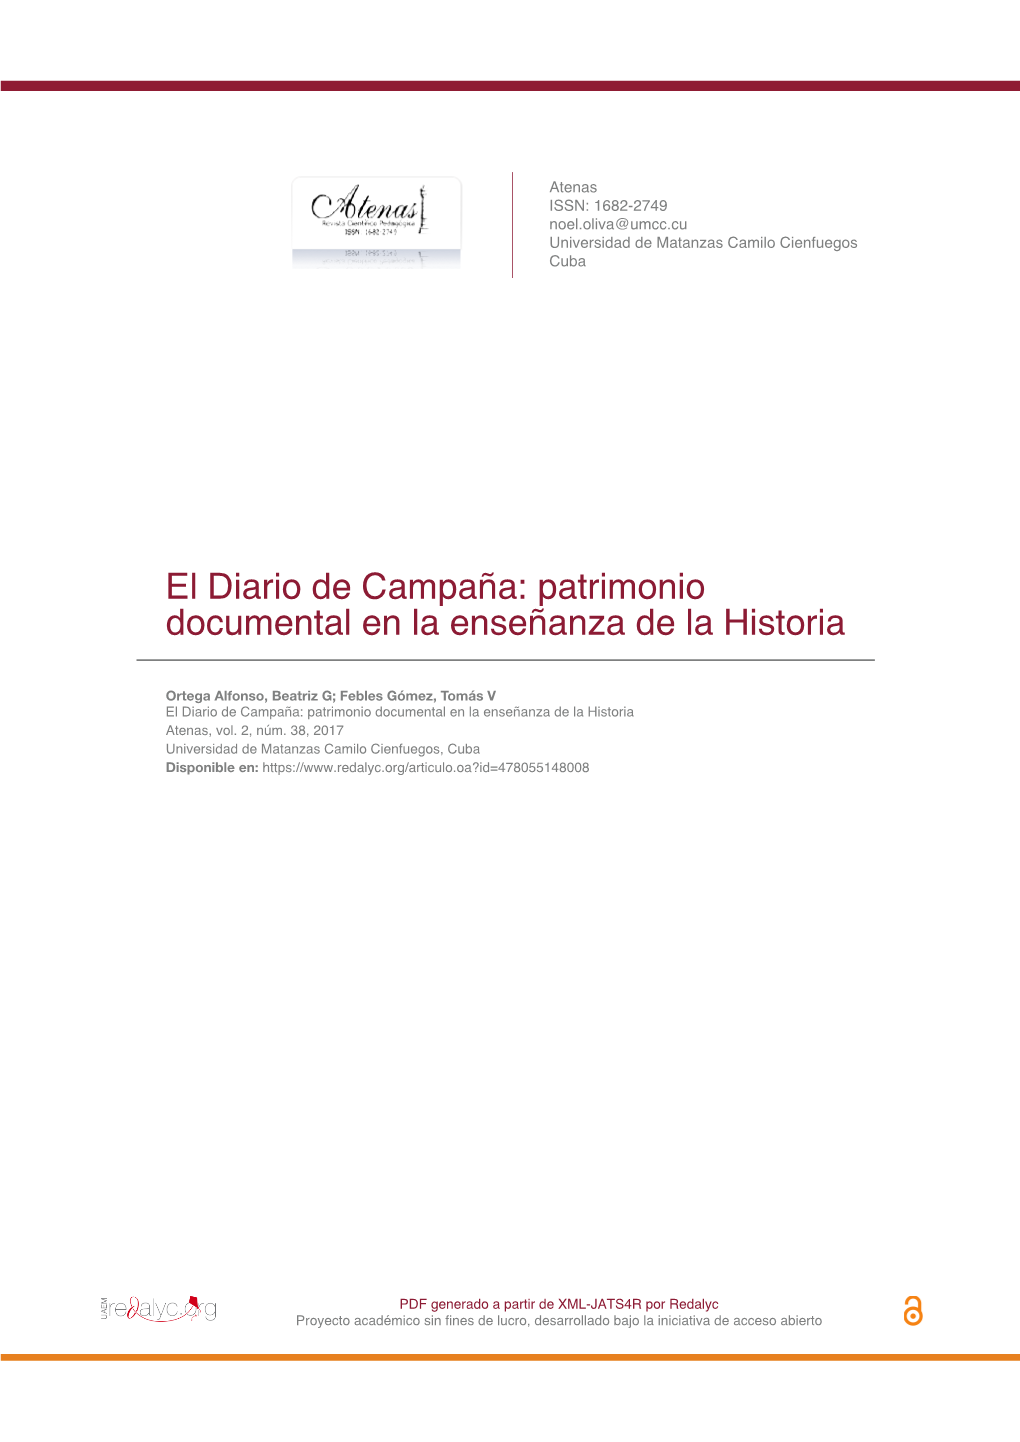 El Diario De Campaña: Patrimonio Documental En La Enseñanza De La Historia